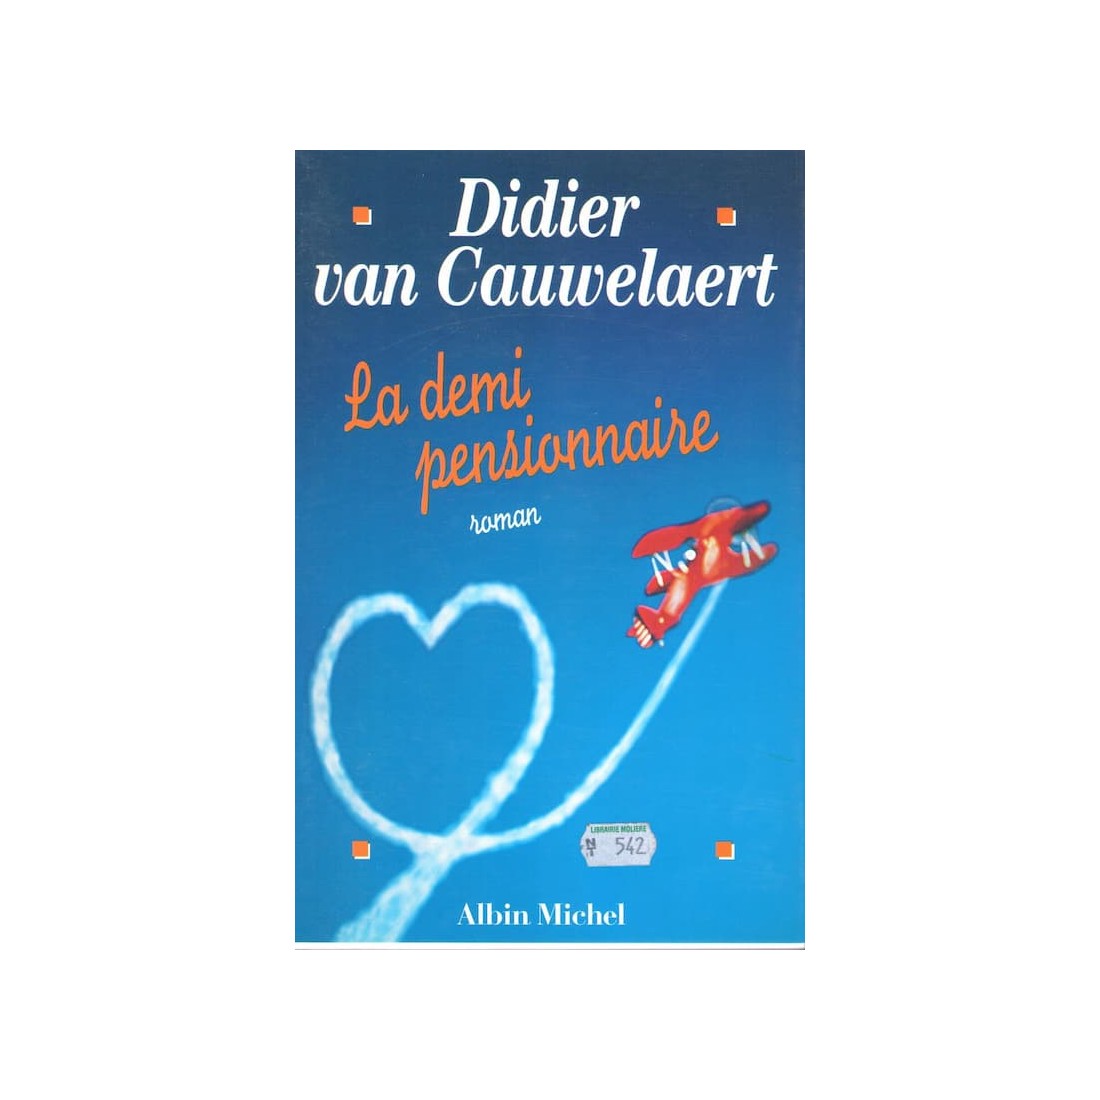 La demi pensionnaire - Roman de Didier van Cauwelaert - Ocazlivres.com